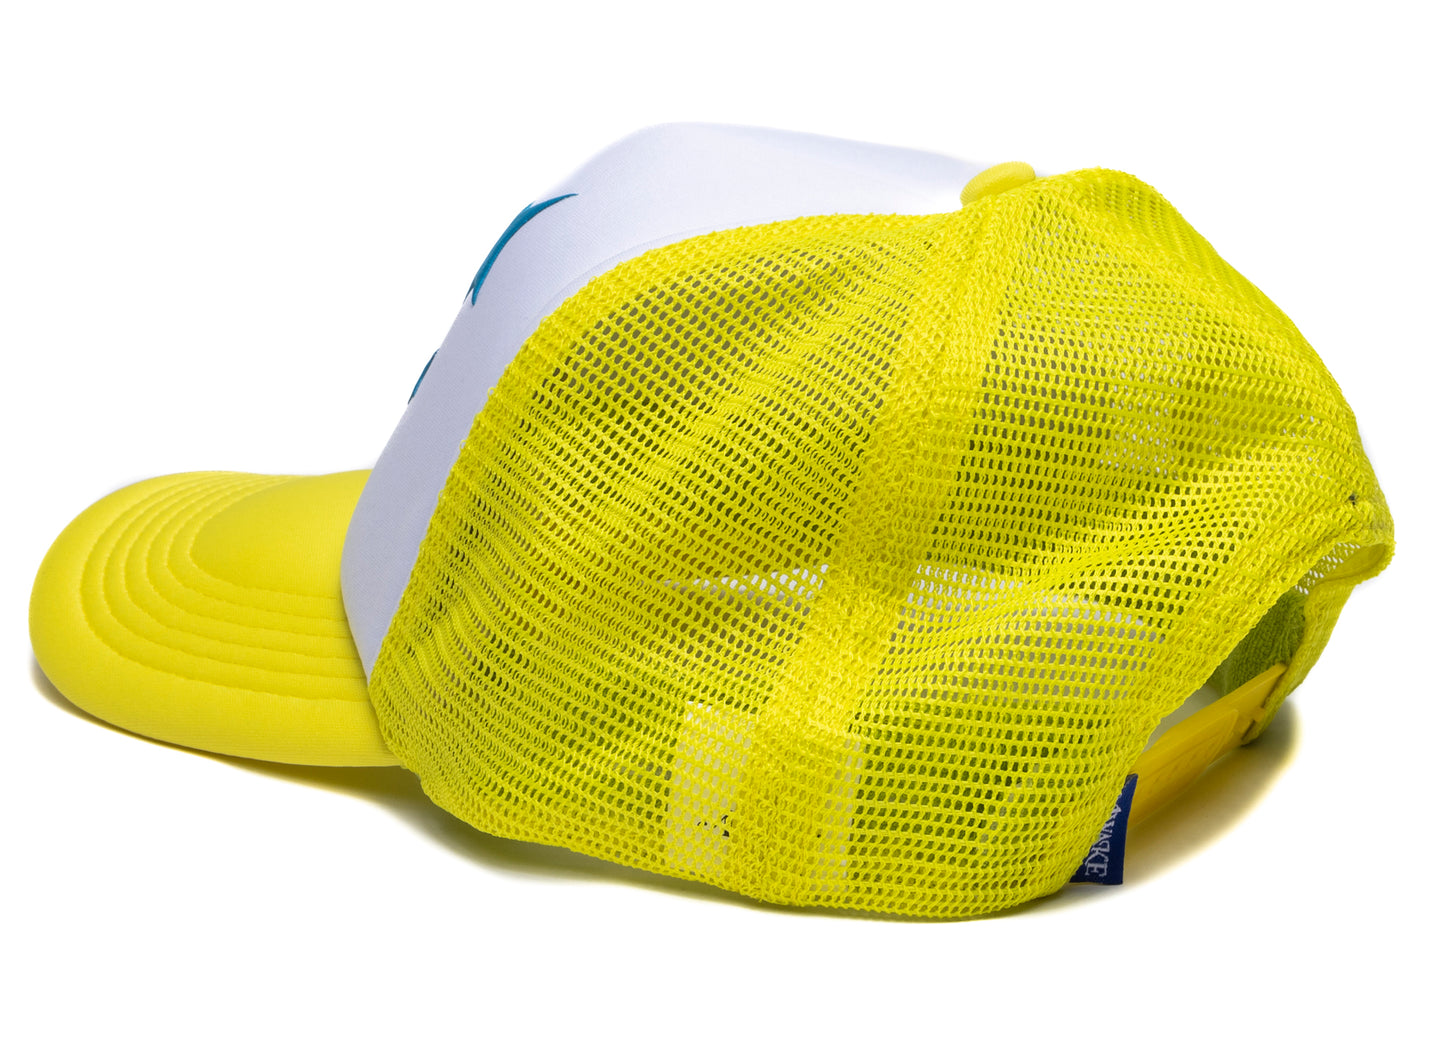 Awake NY A Trucker Hat in Yellow xld